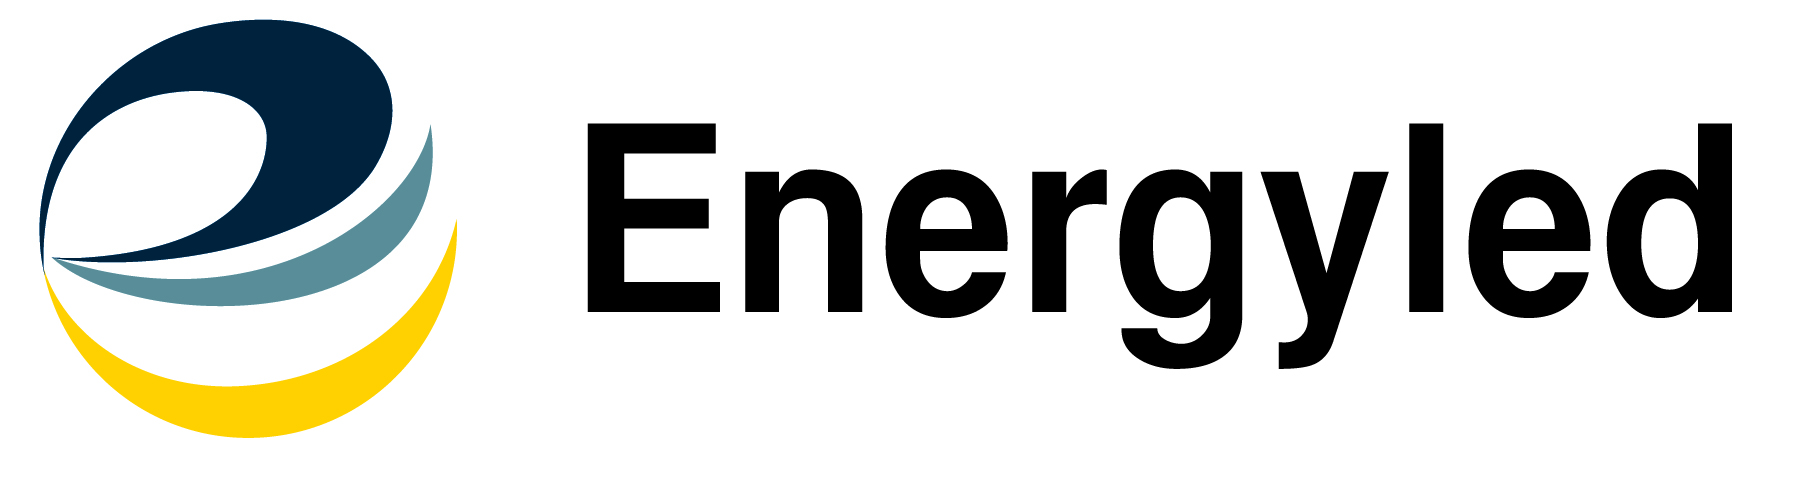 Energyled logo